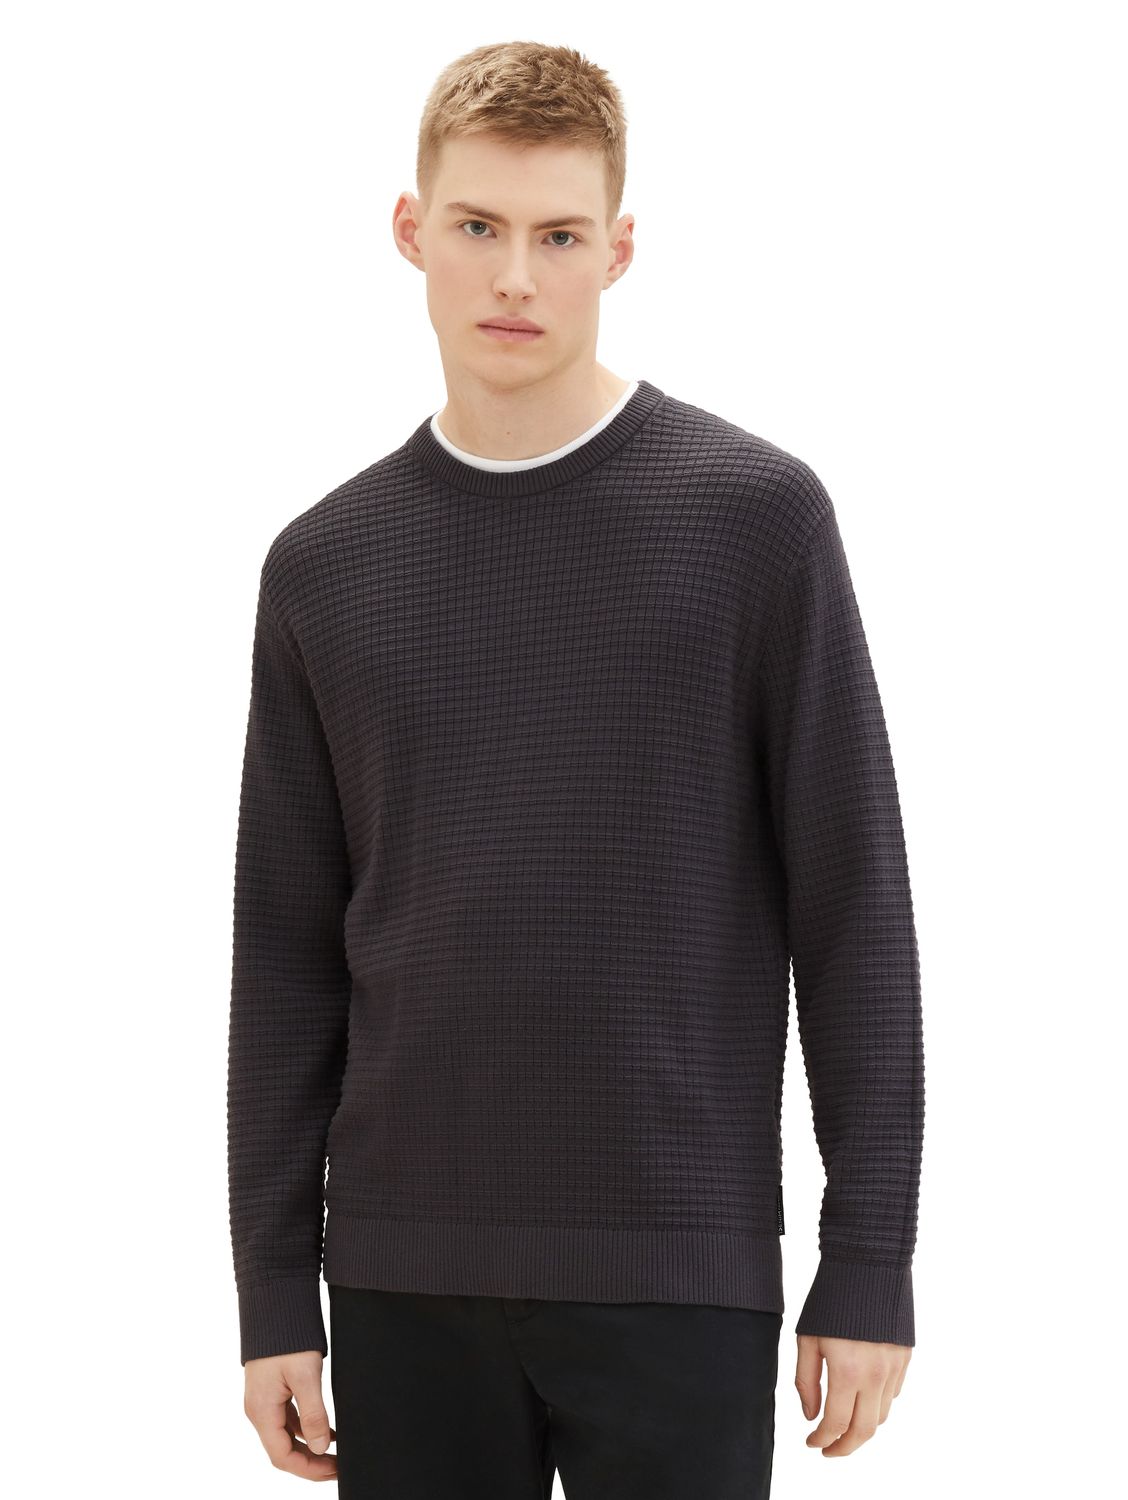 Пуловер TOM TAILOR Denim STRUCTURED DOUBLELAYER, серый пуловер tom tailor denim structured doublelayer серый